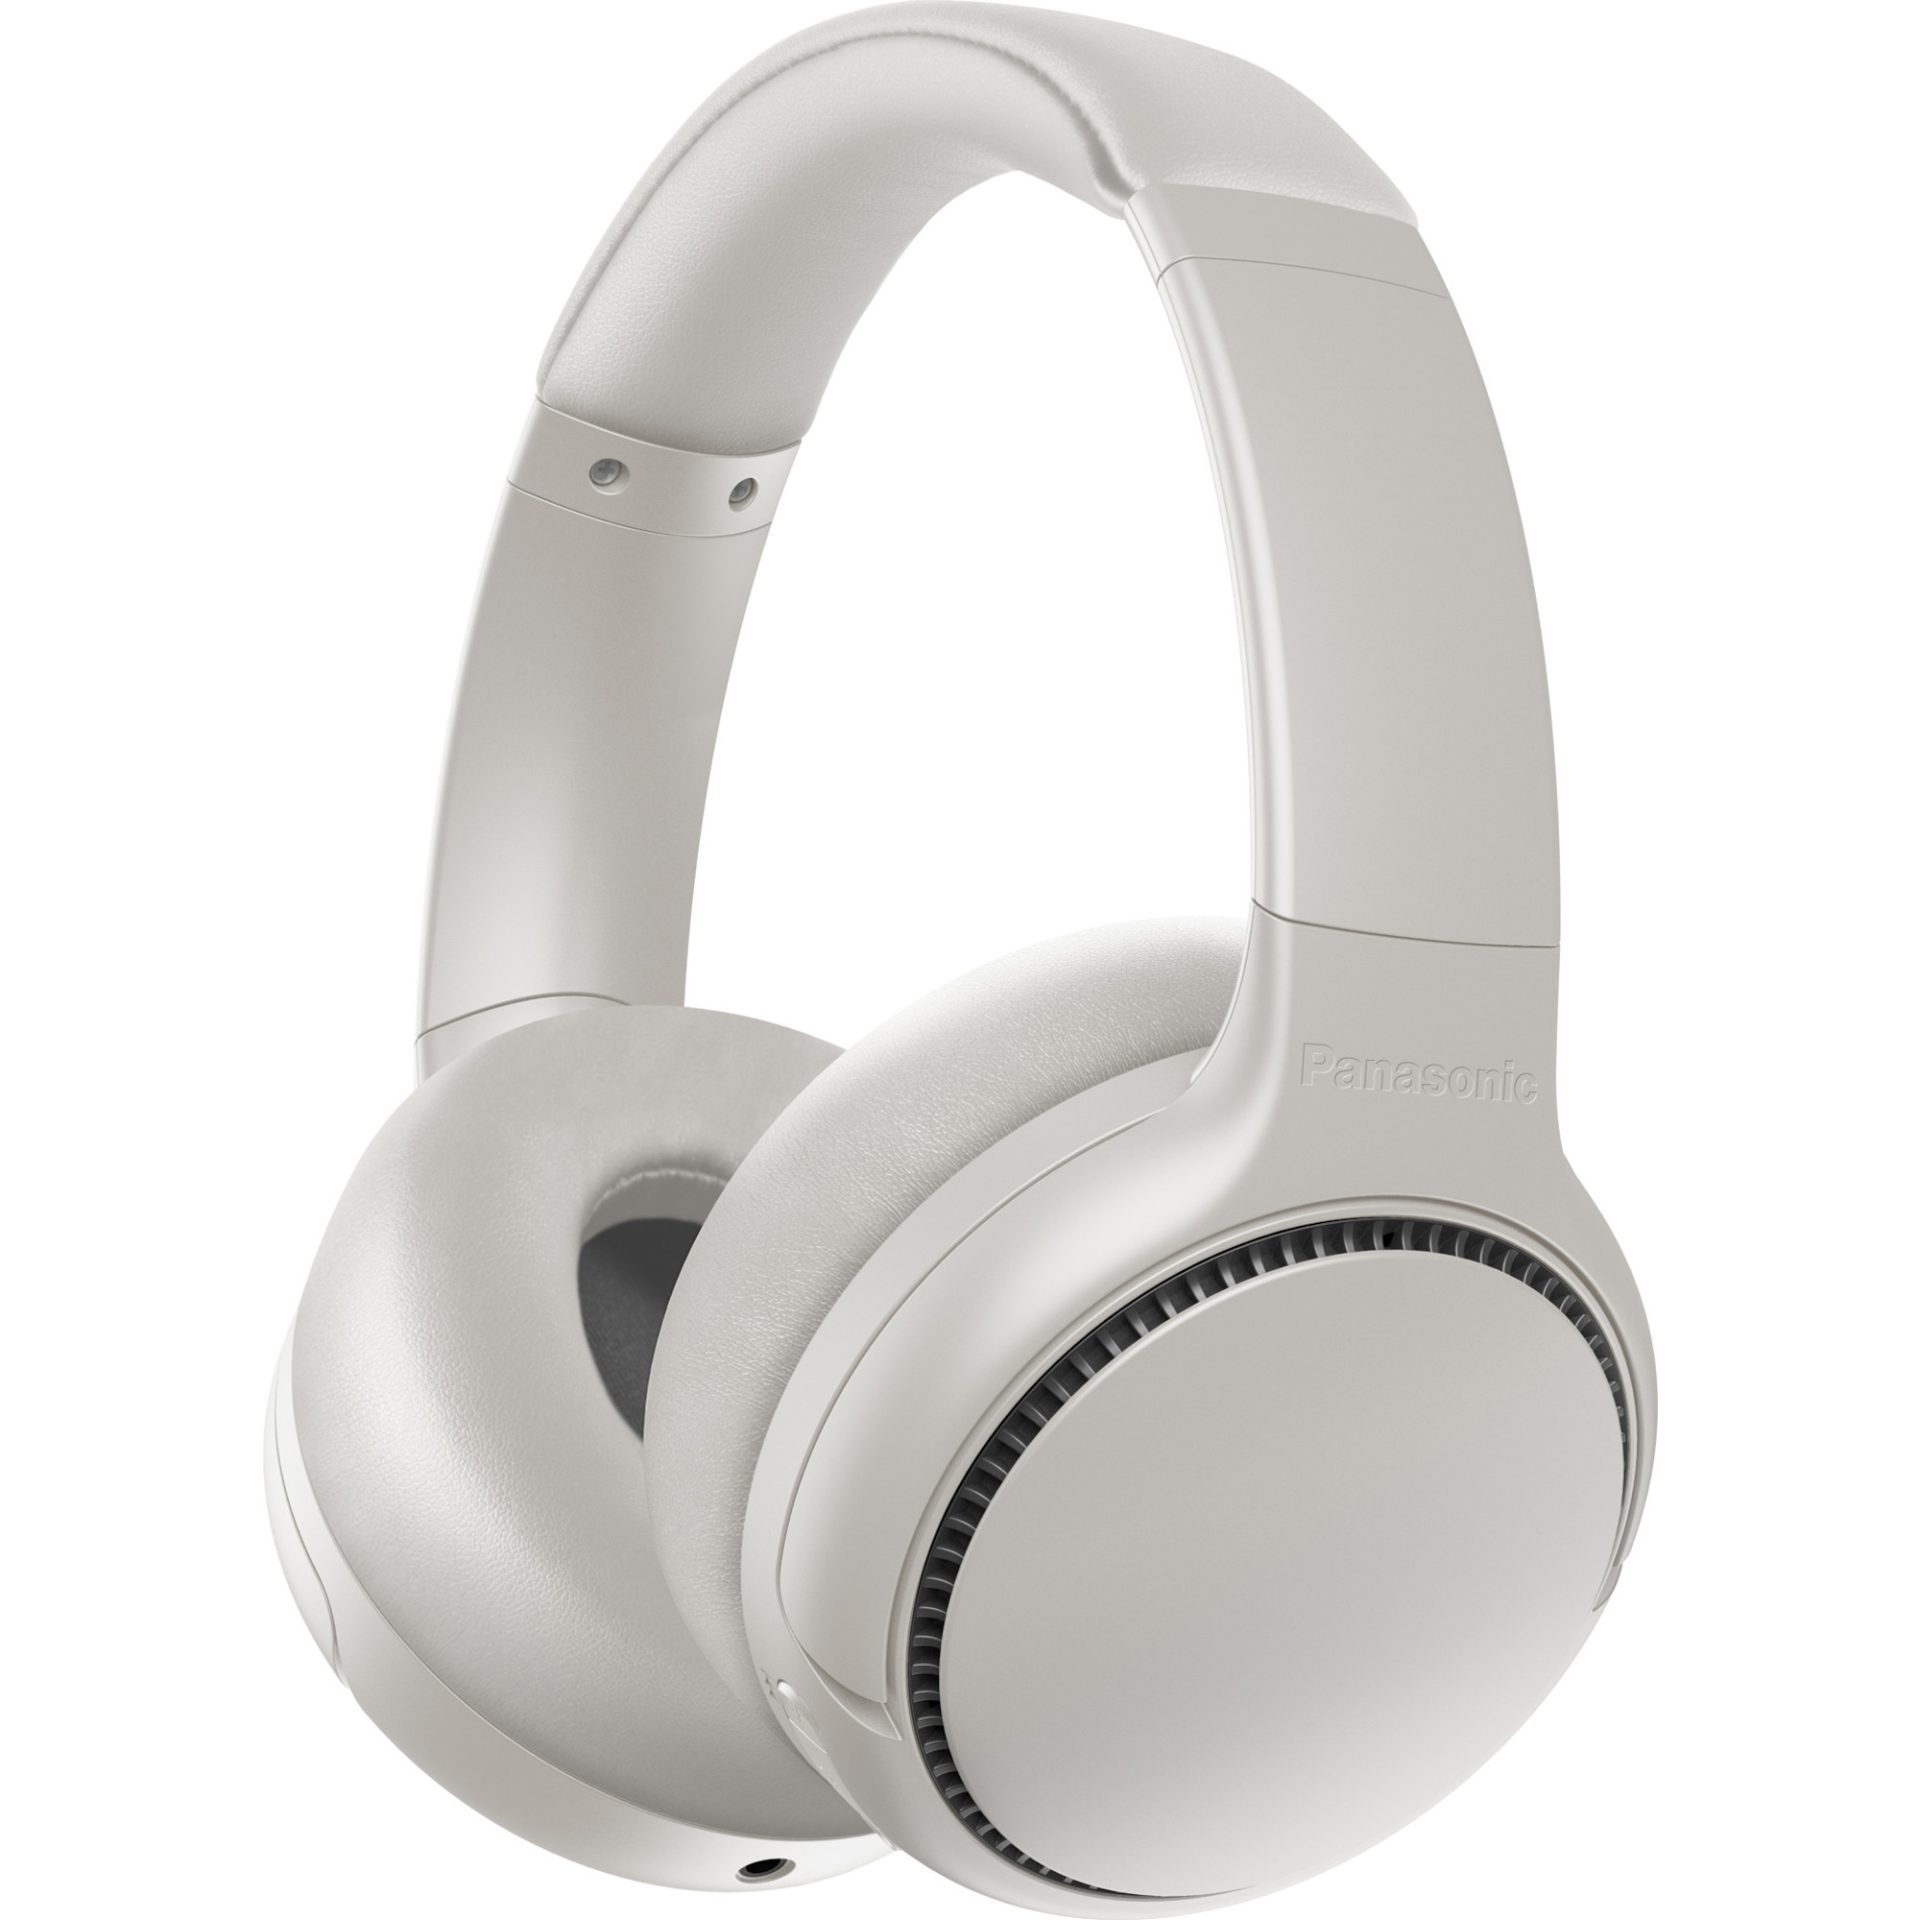 Panasonic RB-M700 bezdrátová sluchátka na uši generující hluboké basy (Bluetooth, funkce XBS DEEP, 20h přehrávání, potlačení šumu), béžová